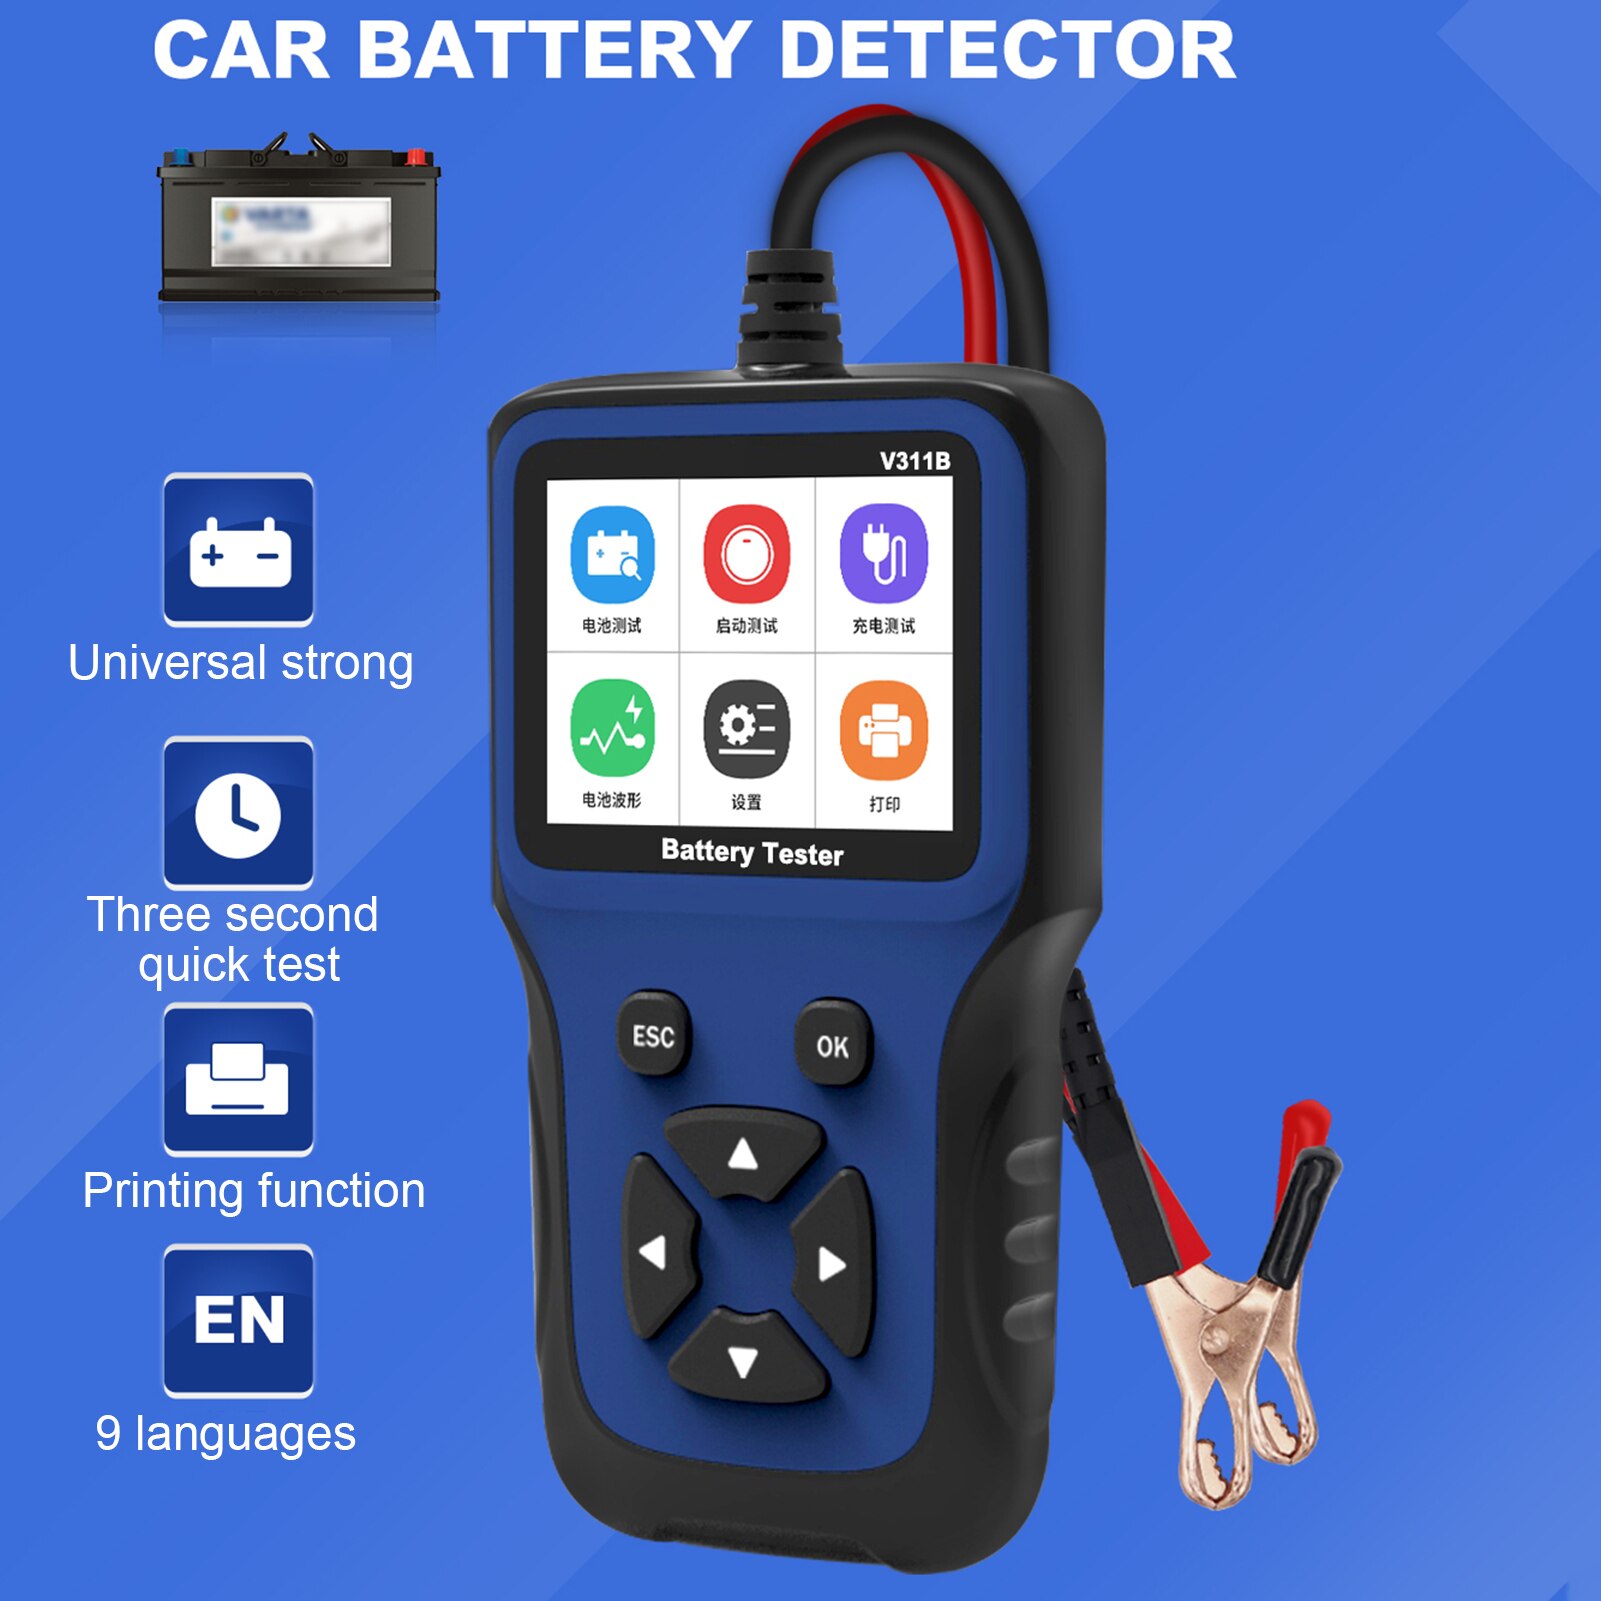 12V Universal Car Battery Tester Analyzer Detector Diagnostic Tool